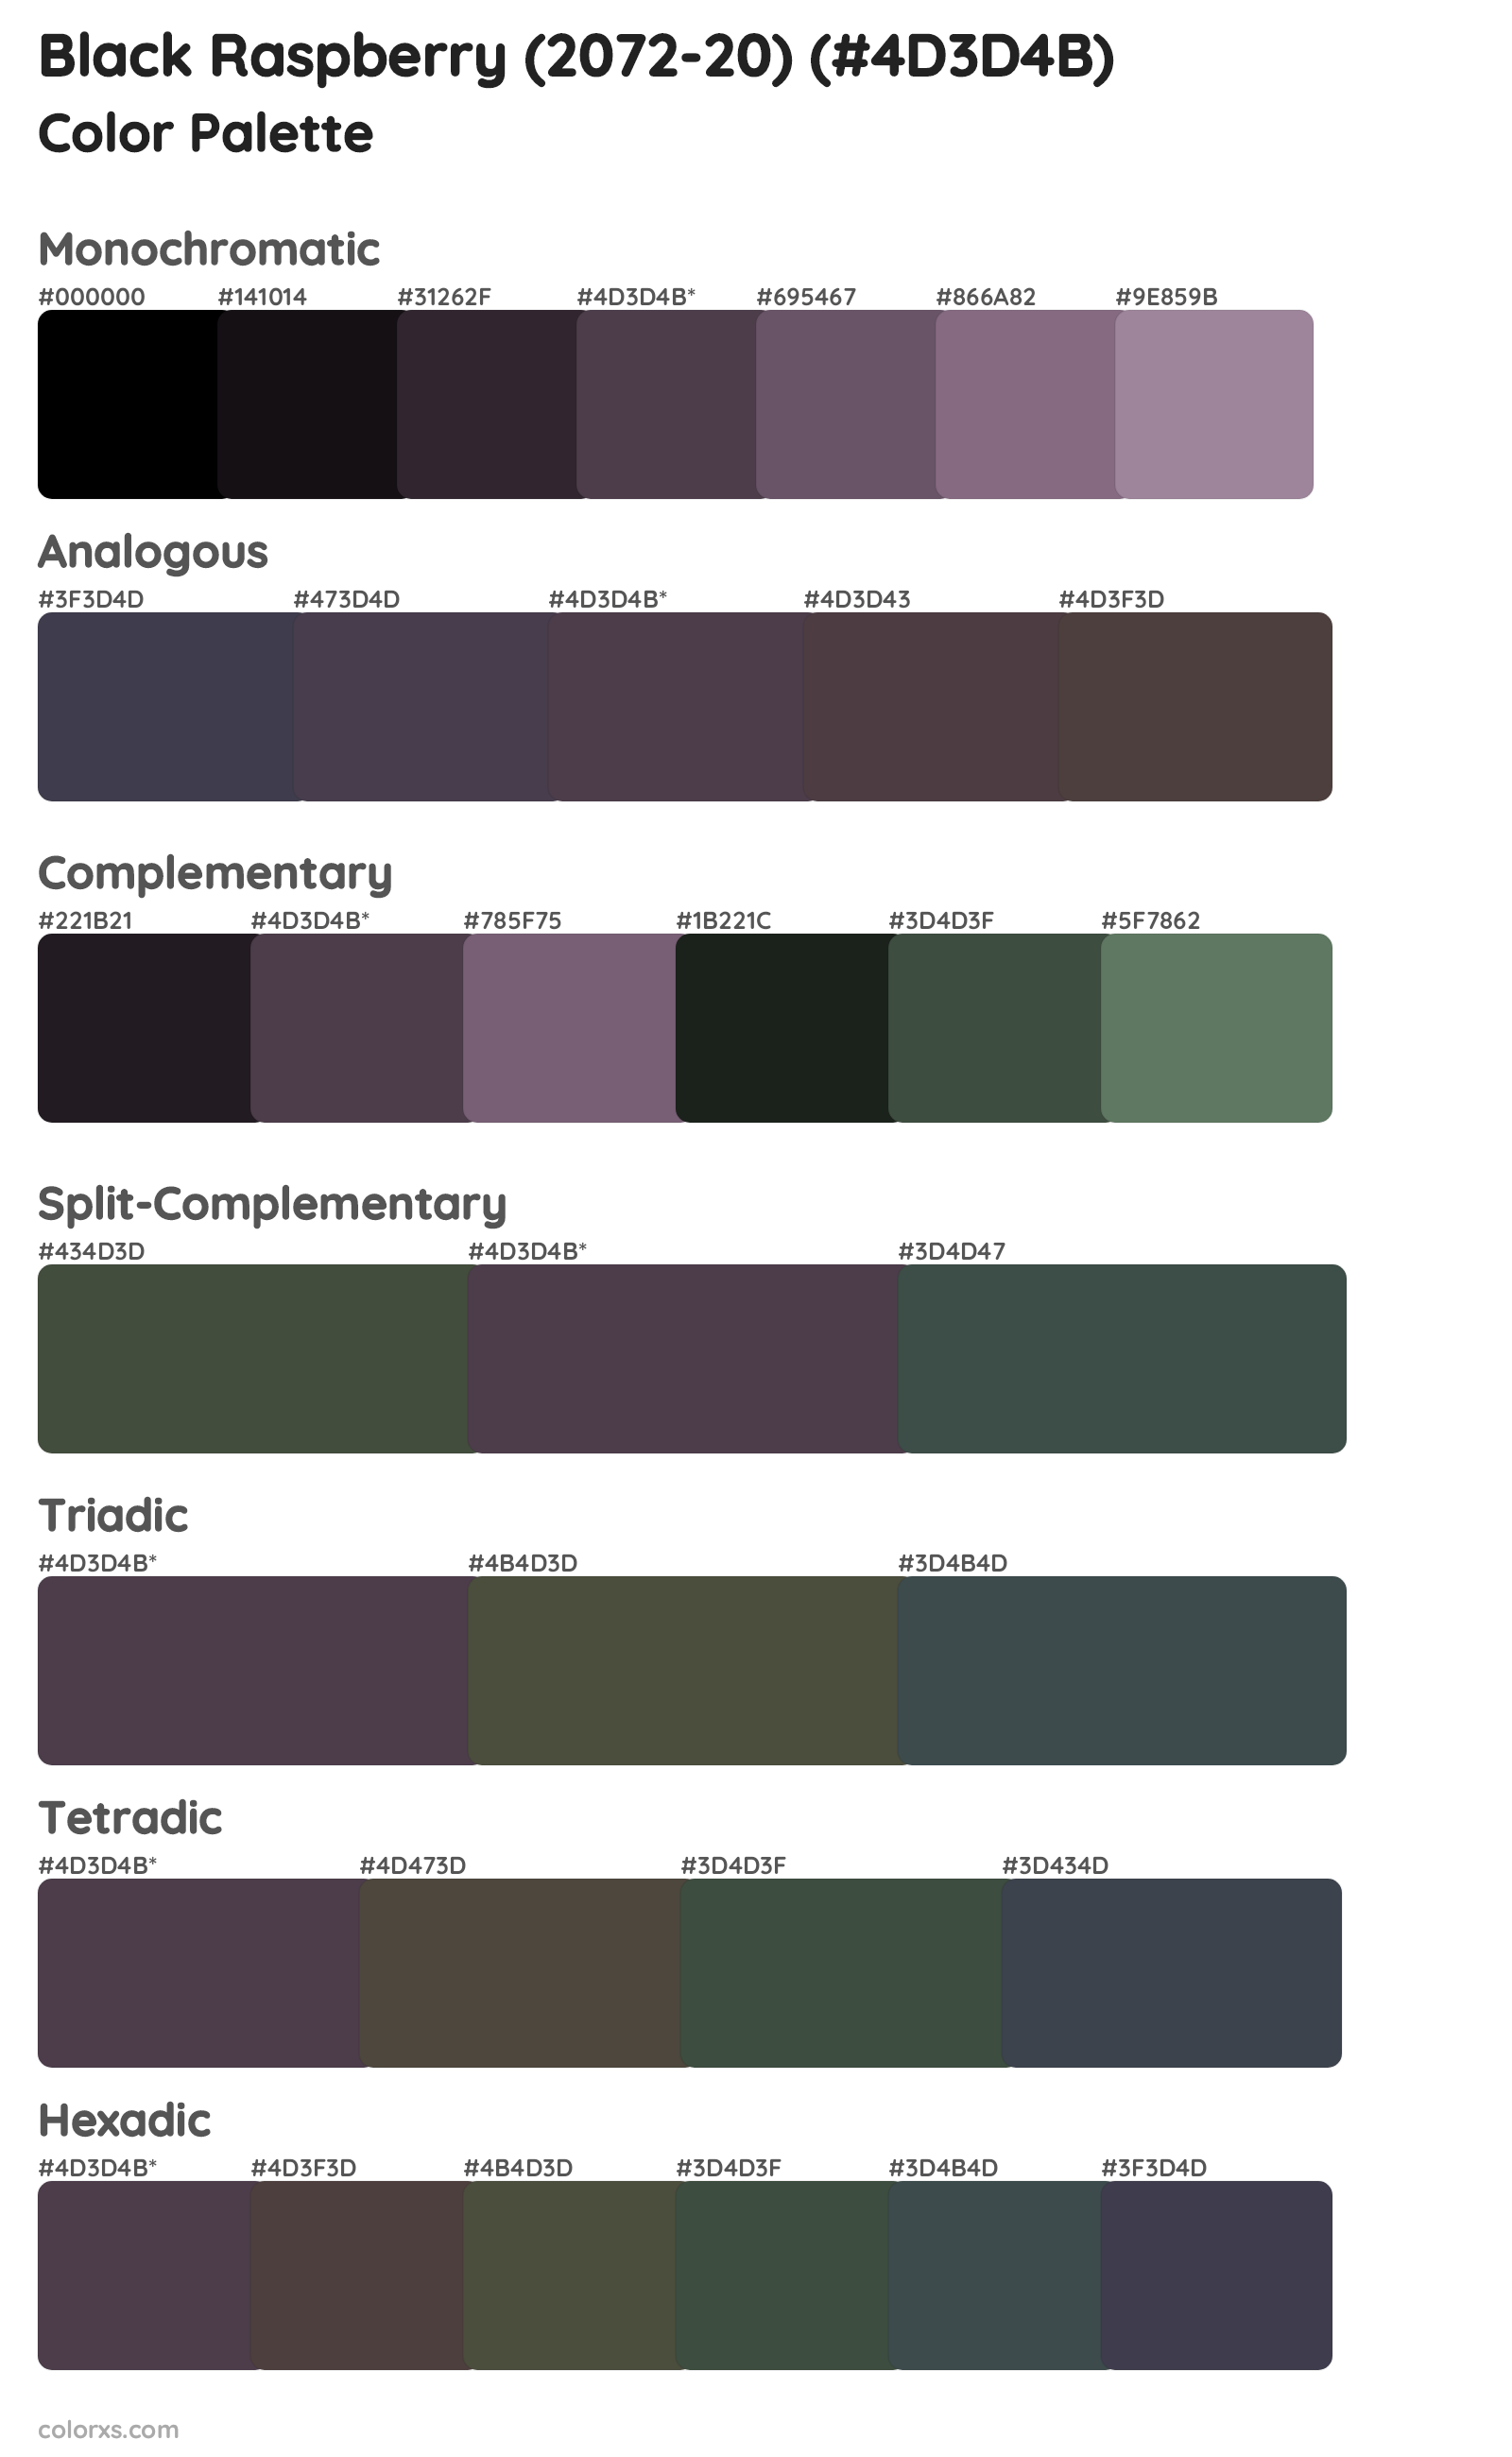 Black Raspberry (2072-20) Color Scheme Palettes